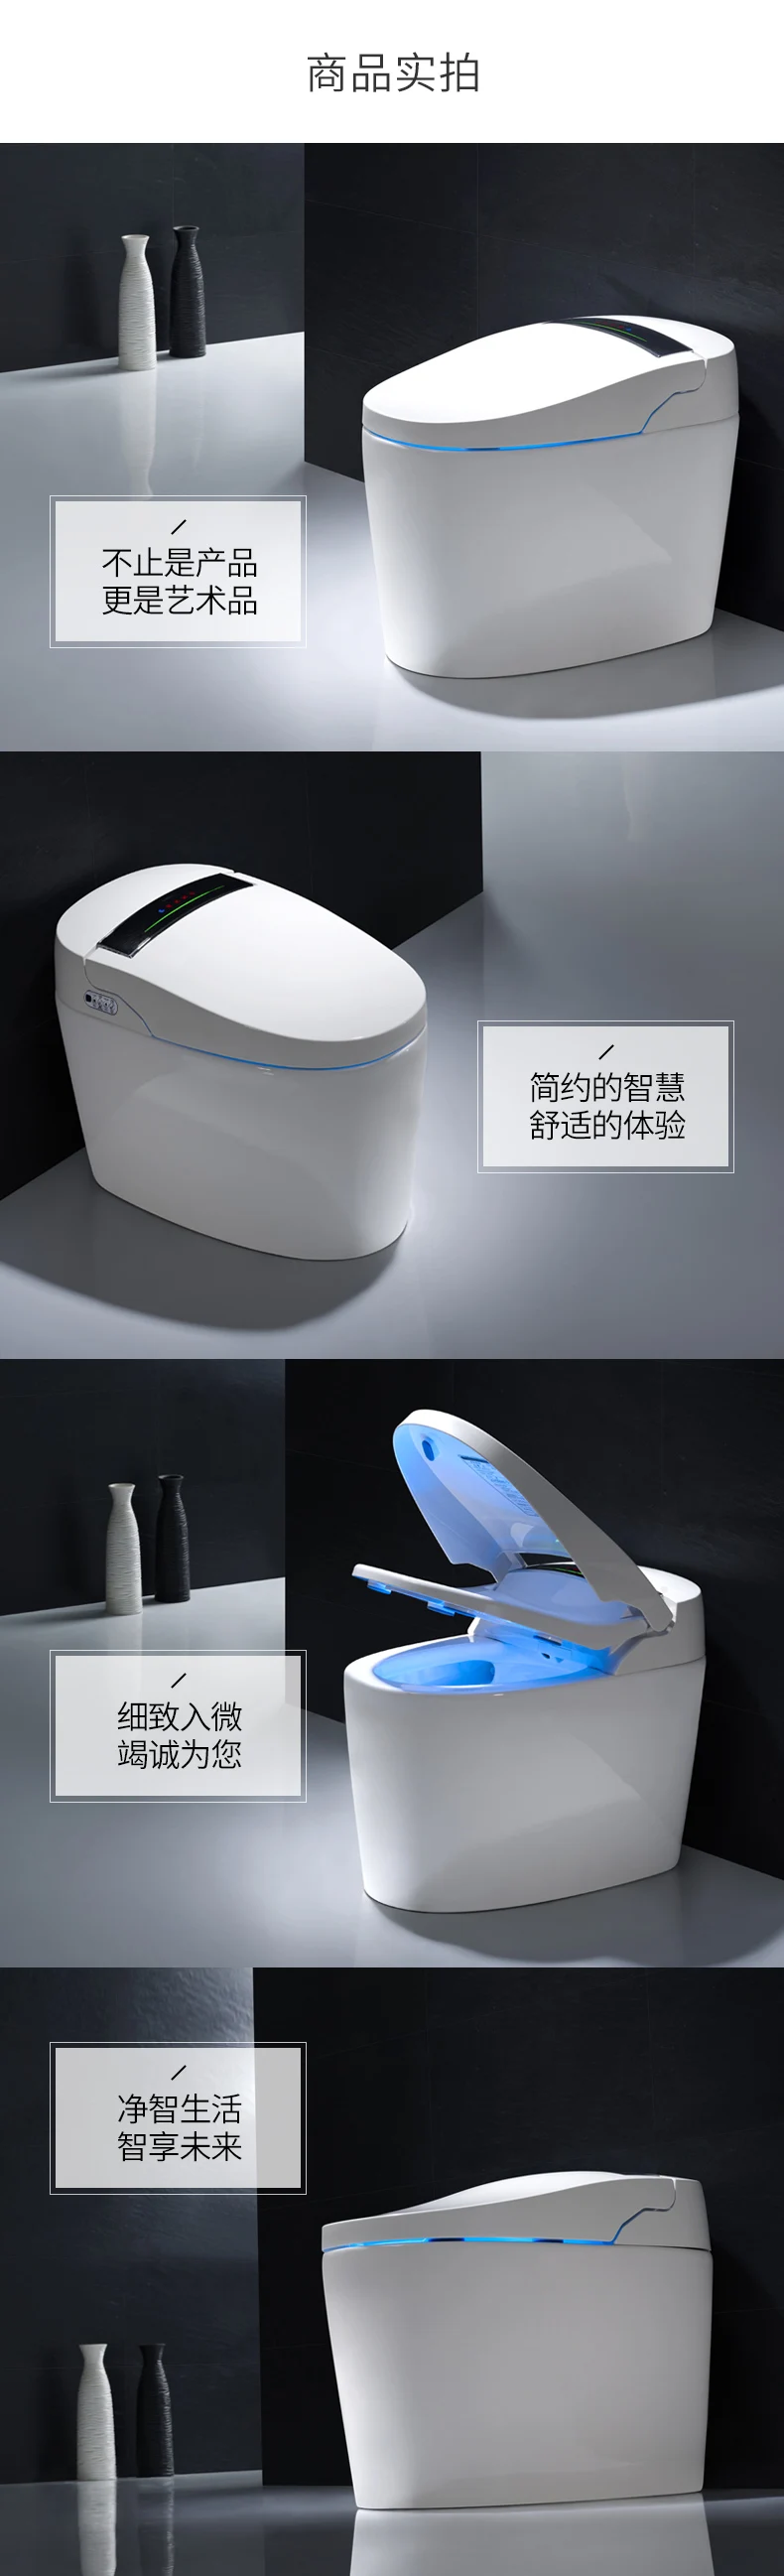 MP3018 электрический умный туалет полный автоматический Флип домашний туалет без резервуара для воды